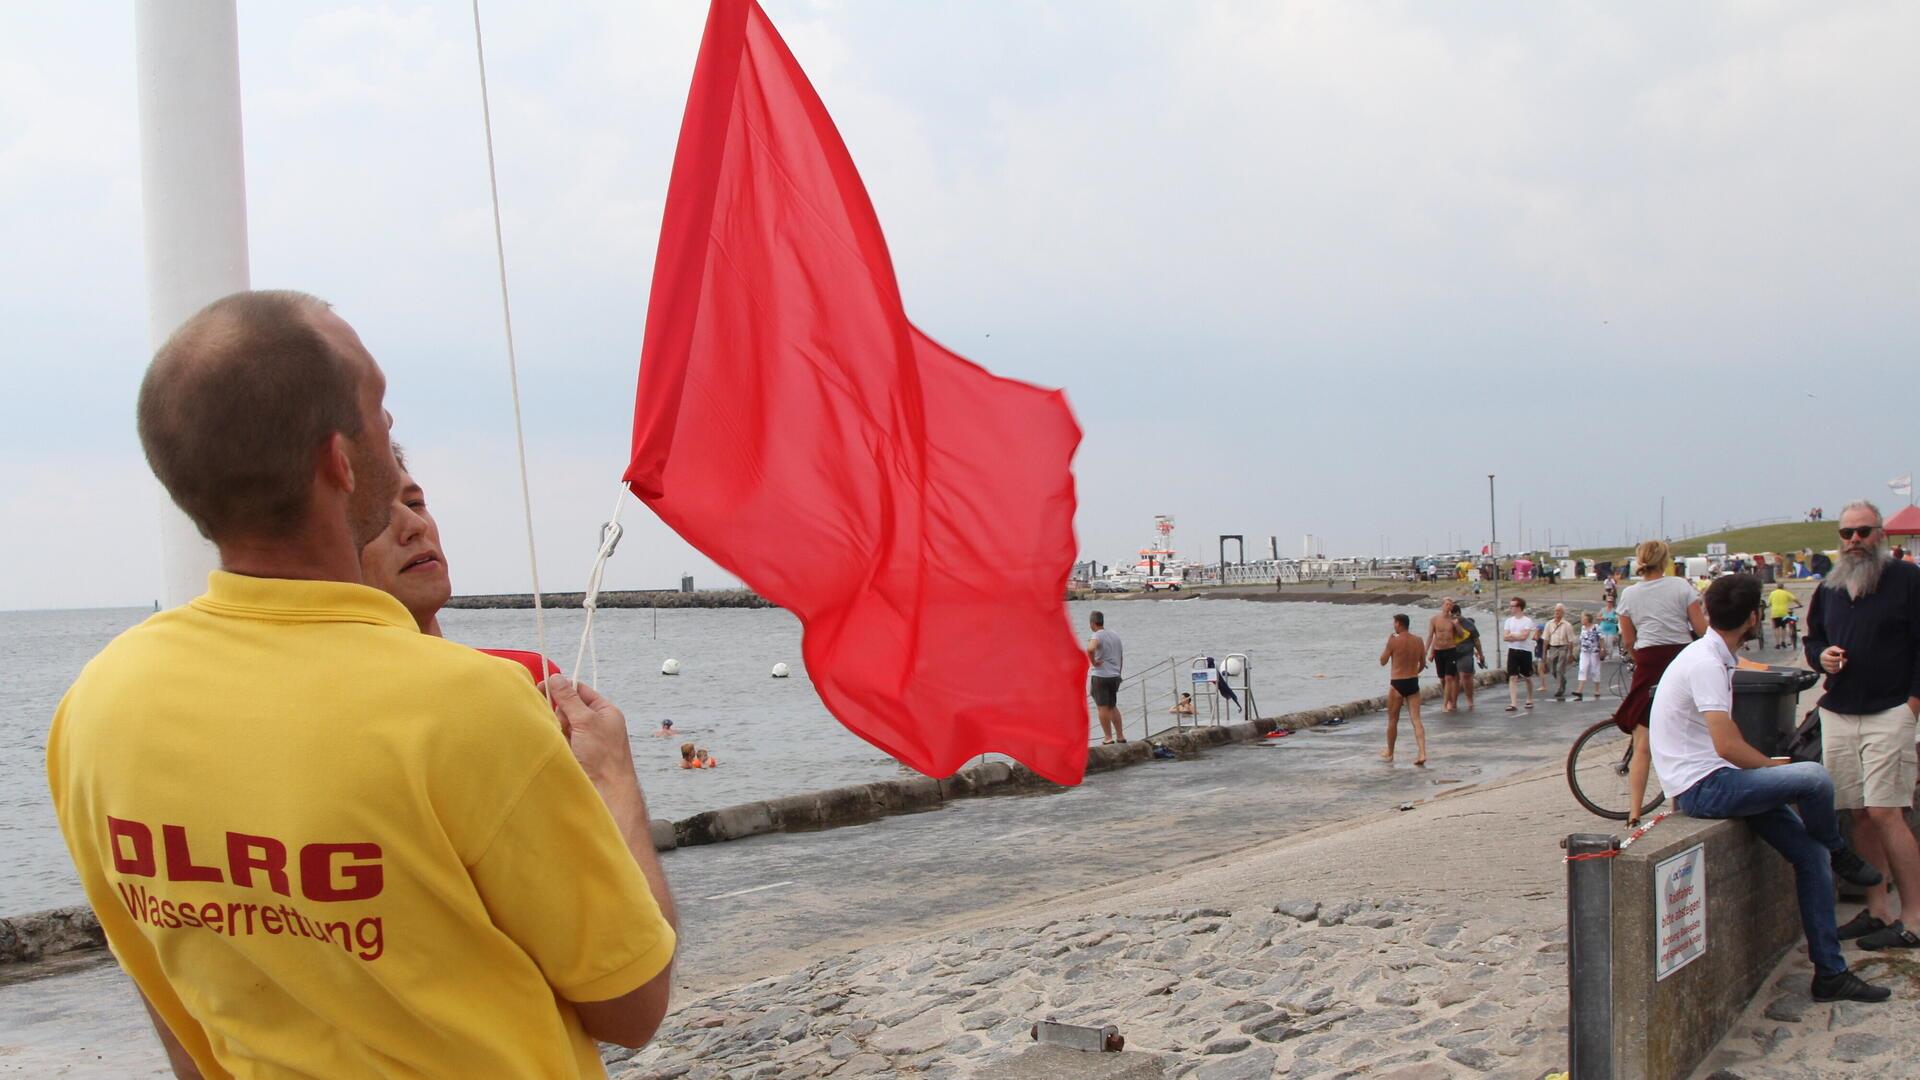 Ein Mann hisst eine rote Fahne